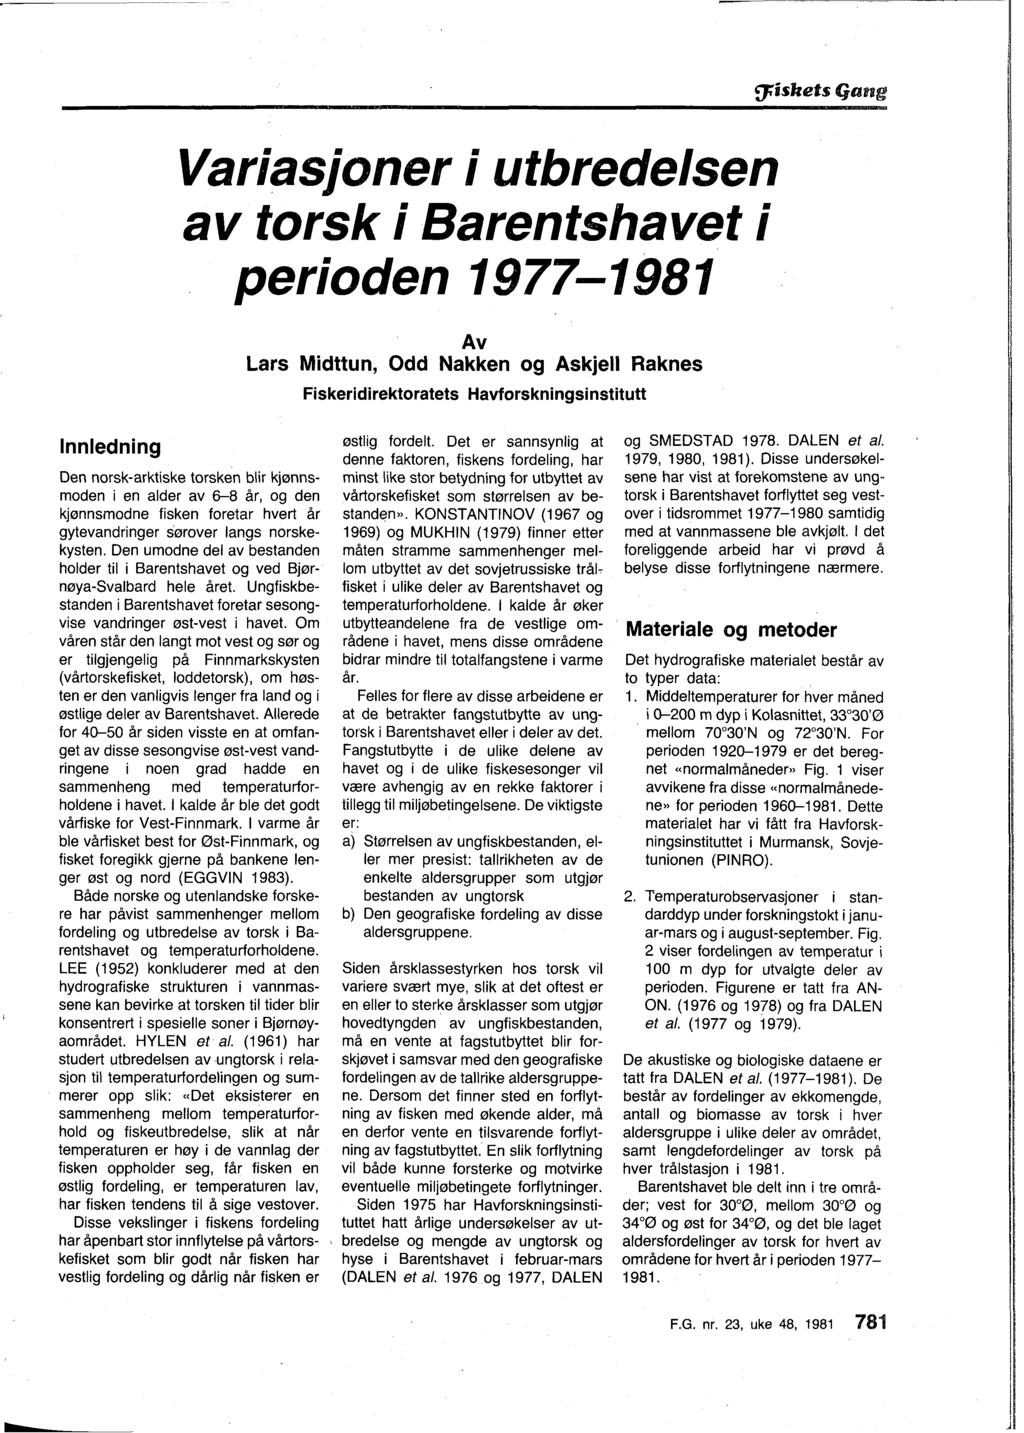 Variasjoner i utbredelsen av torsk i Barentshavet i perioden 1977-1981 Av Lars Midttun, Odd Nakken og Askjell Raknes Fiskeridirektoratets Havforskningsinstitutt l Innledning Den norsk-arktiske